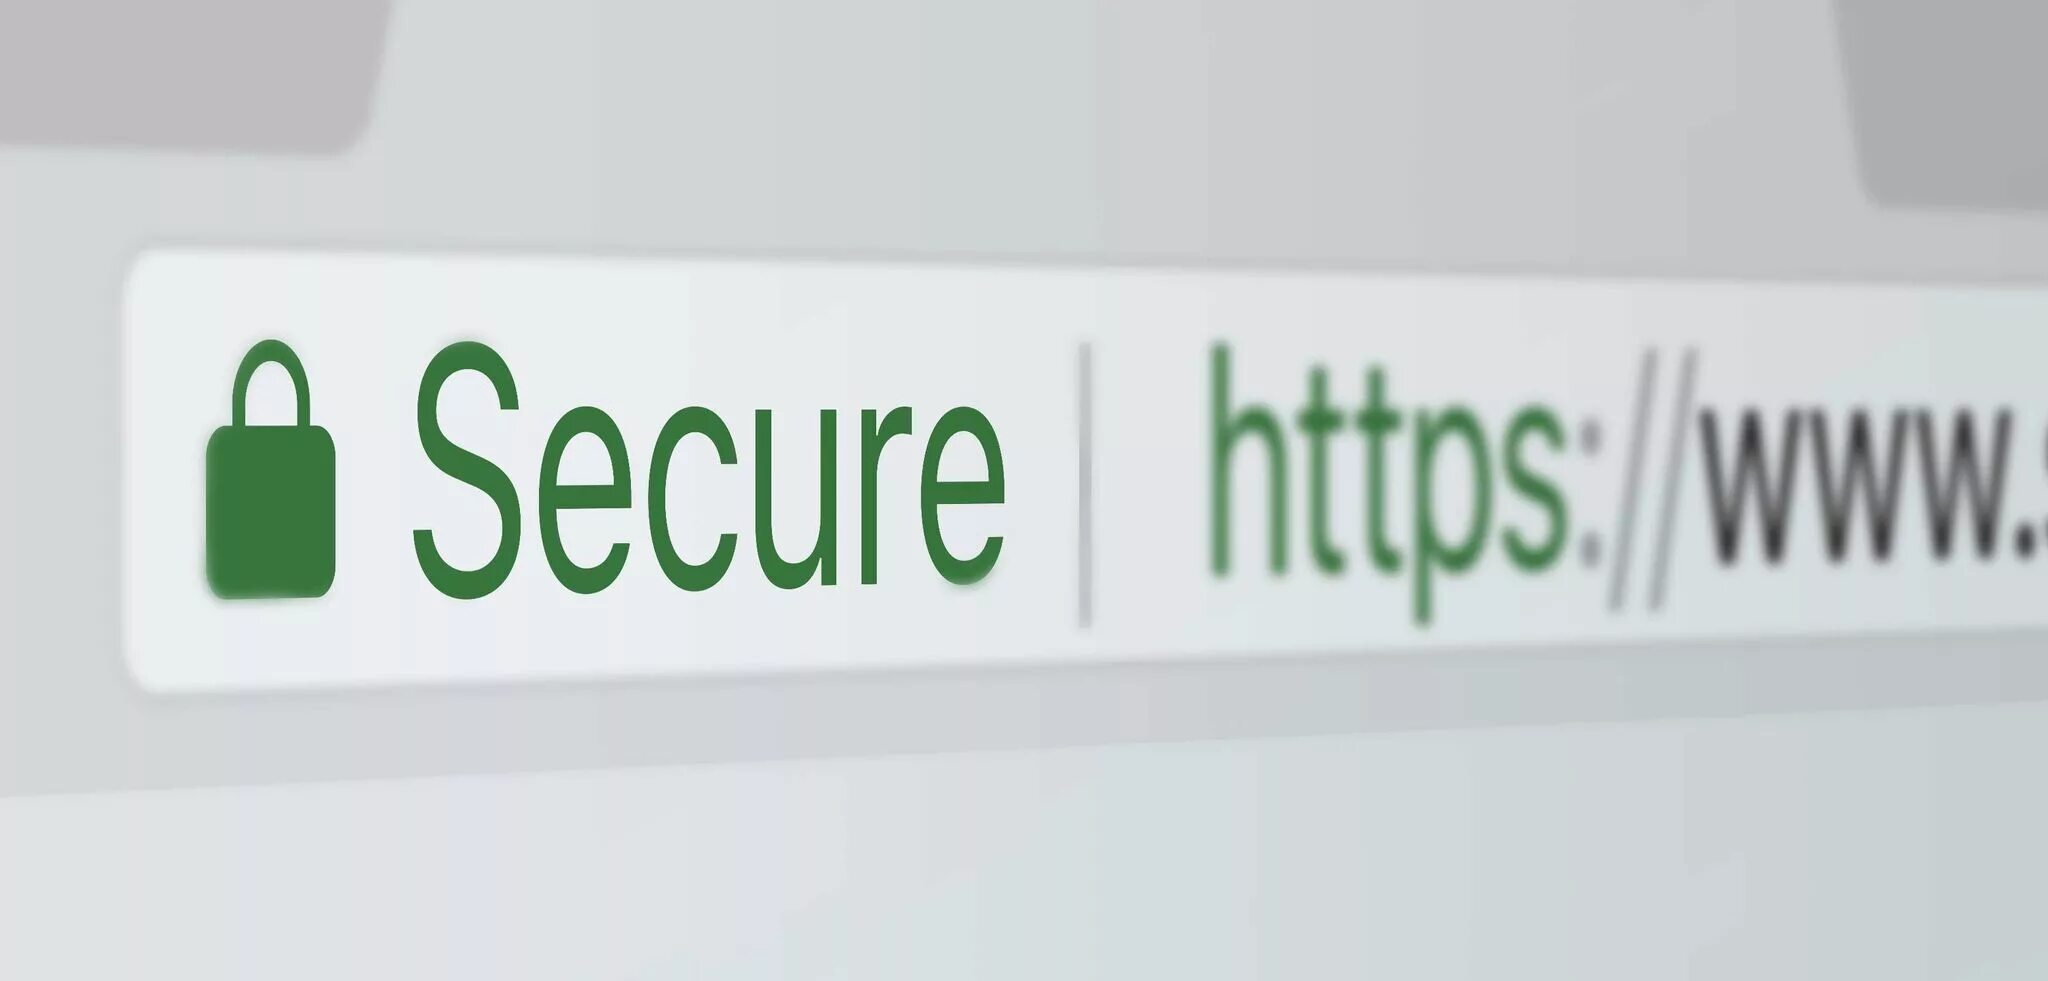 Ssl test. SSL сертификат. SSL сертификат для сайта. SSL сертификат картинки. ССЛ сертификат.